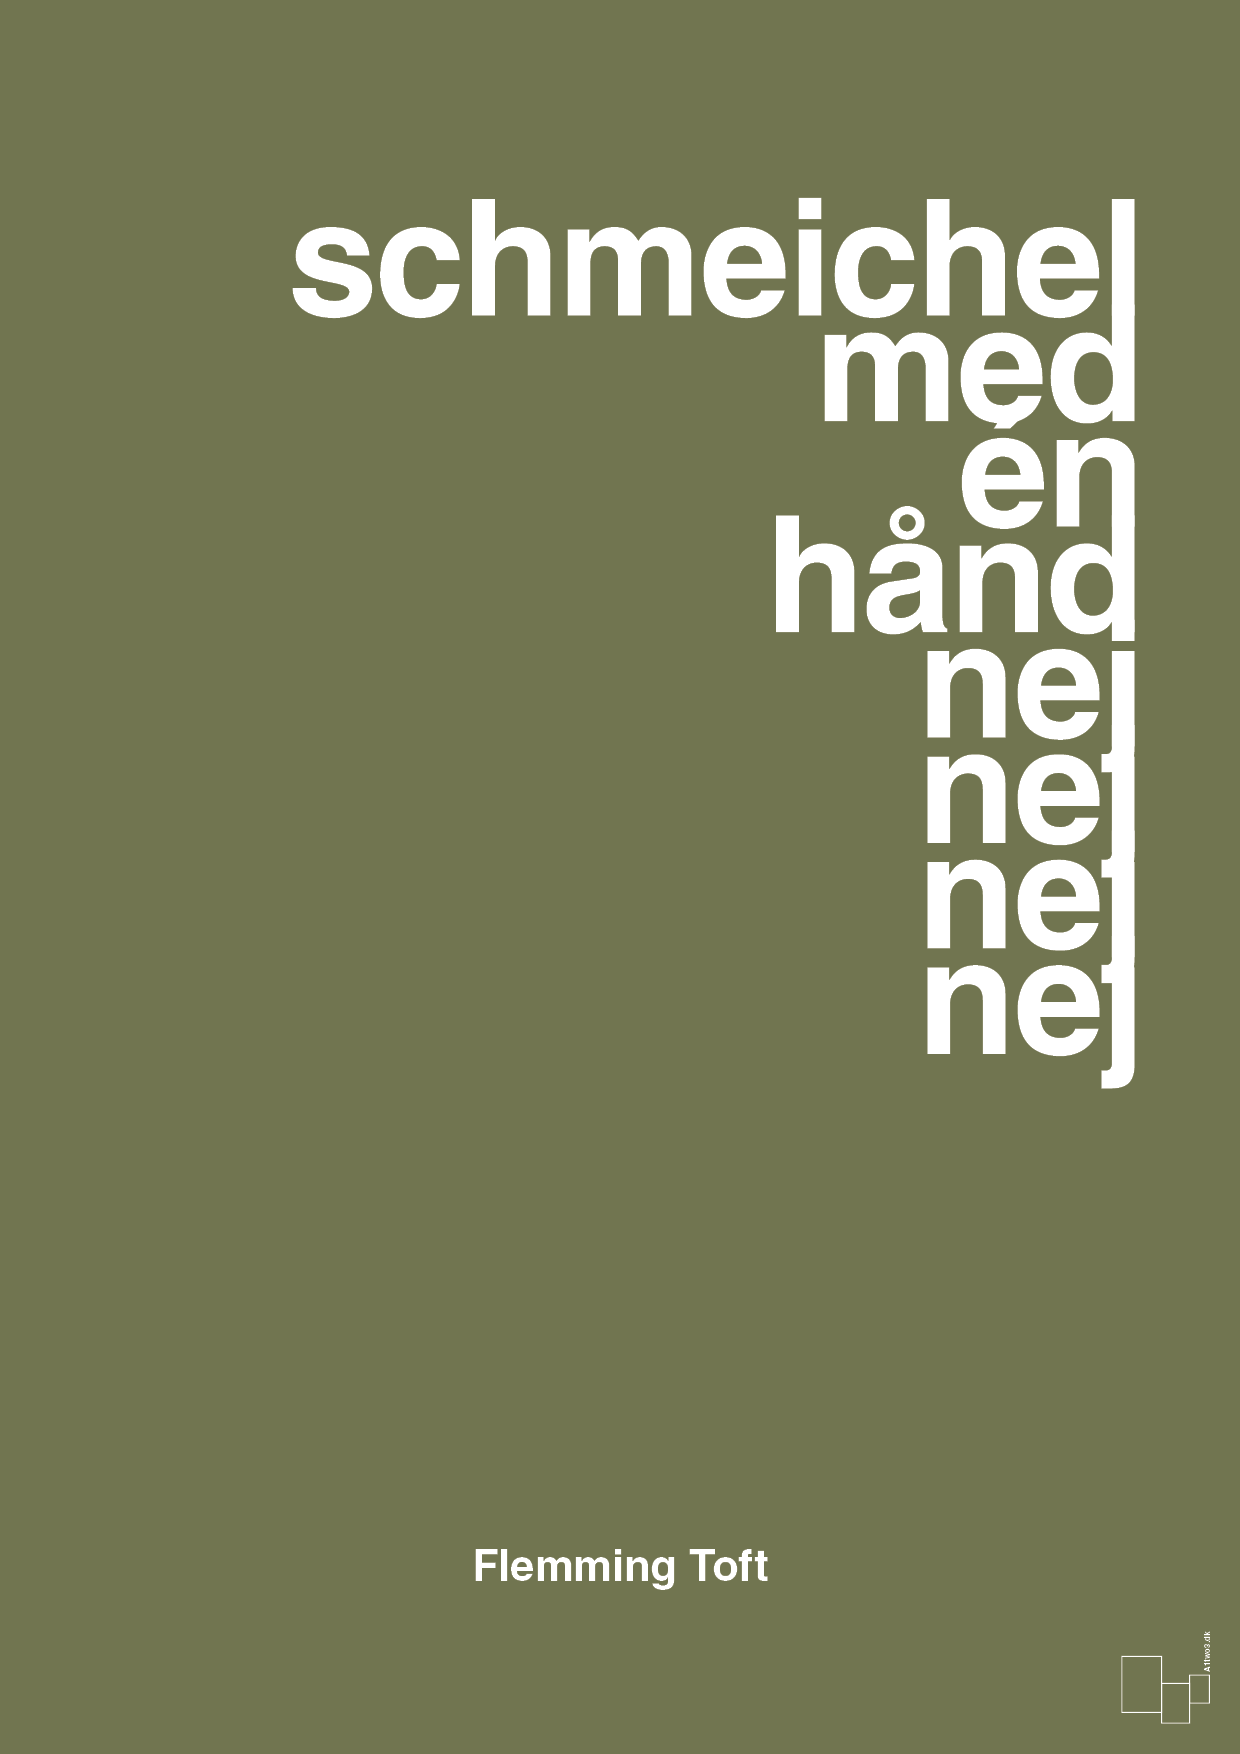 schmeichel med én hånd nej nej nej nej - Plakat med Citater i Secret Meadow